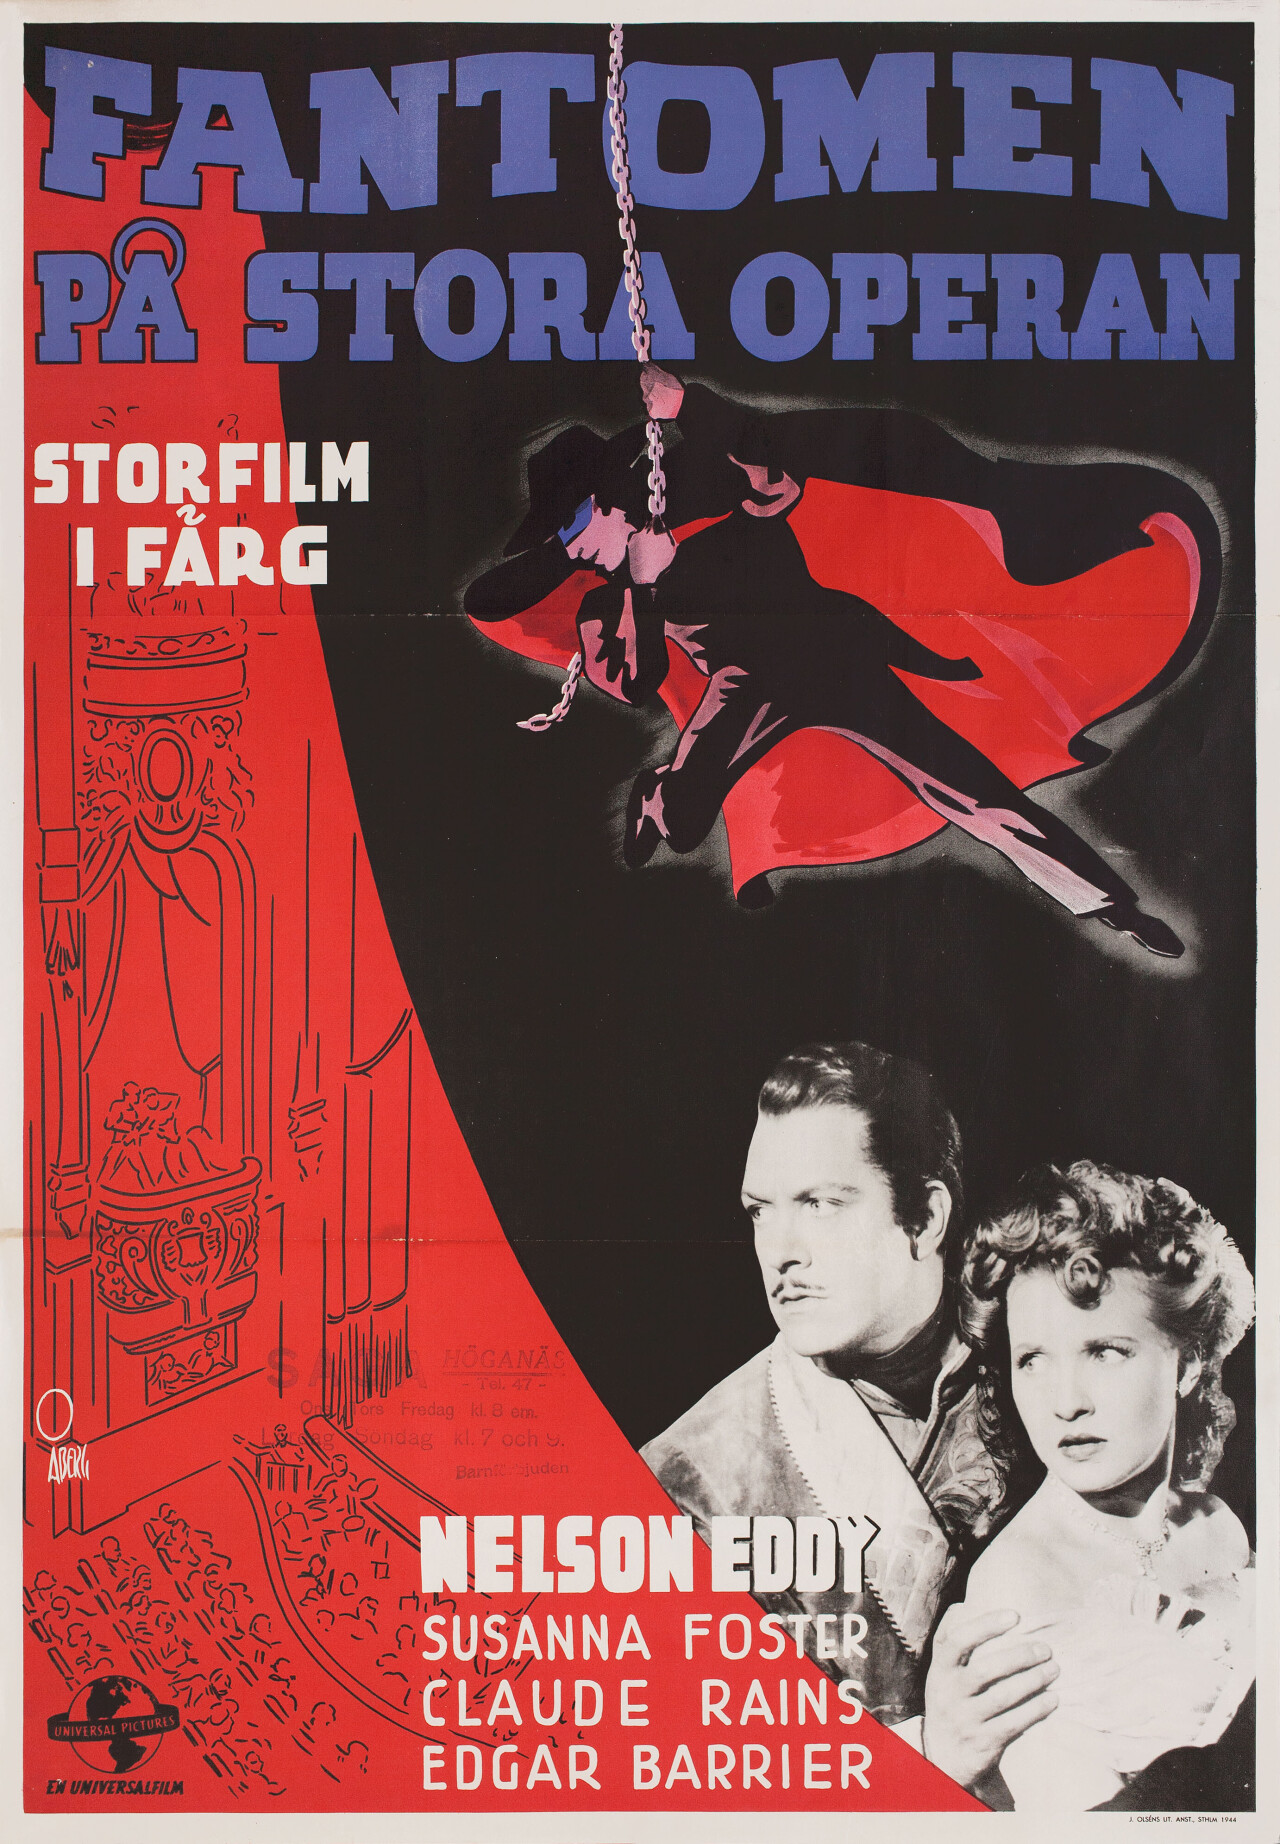 Призрак оперы (Phantom of the Opera, 1943), режиссёр Артур Любин, шведский постер к фильму, автор Госта Аберг (ужасы, 1944 год)